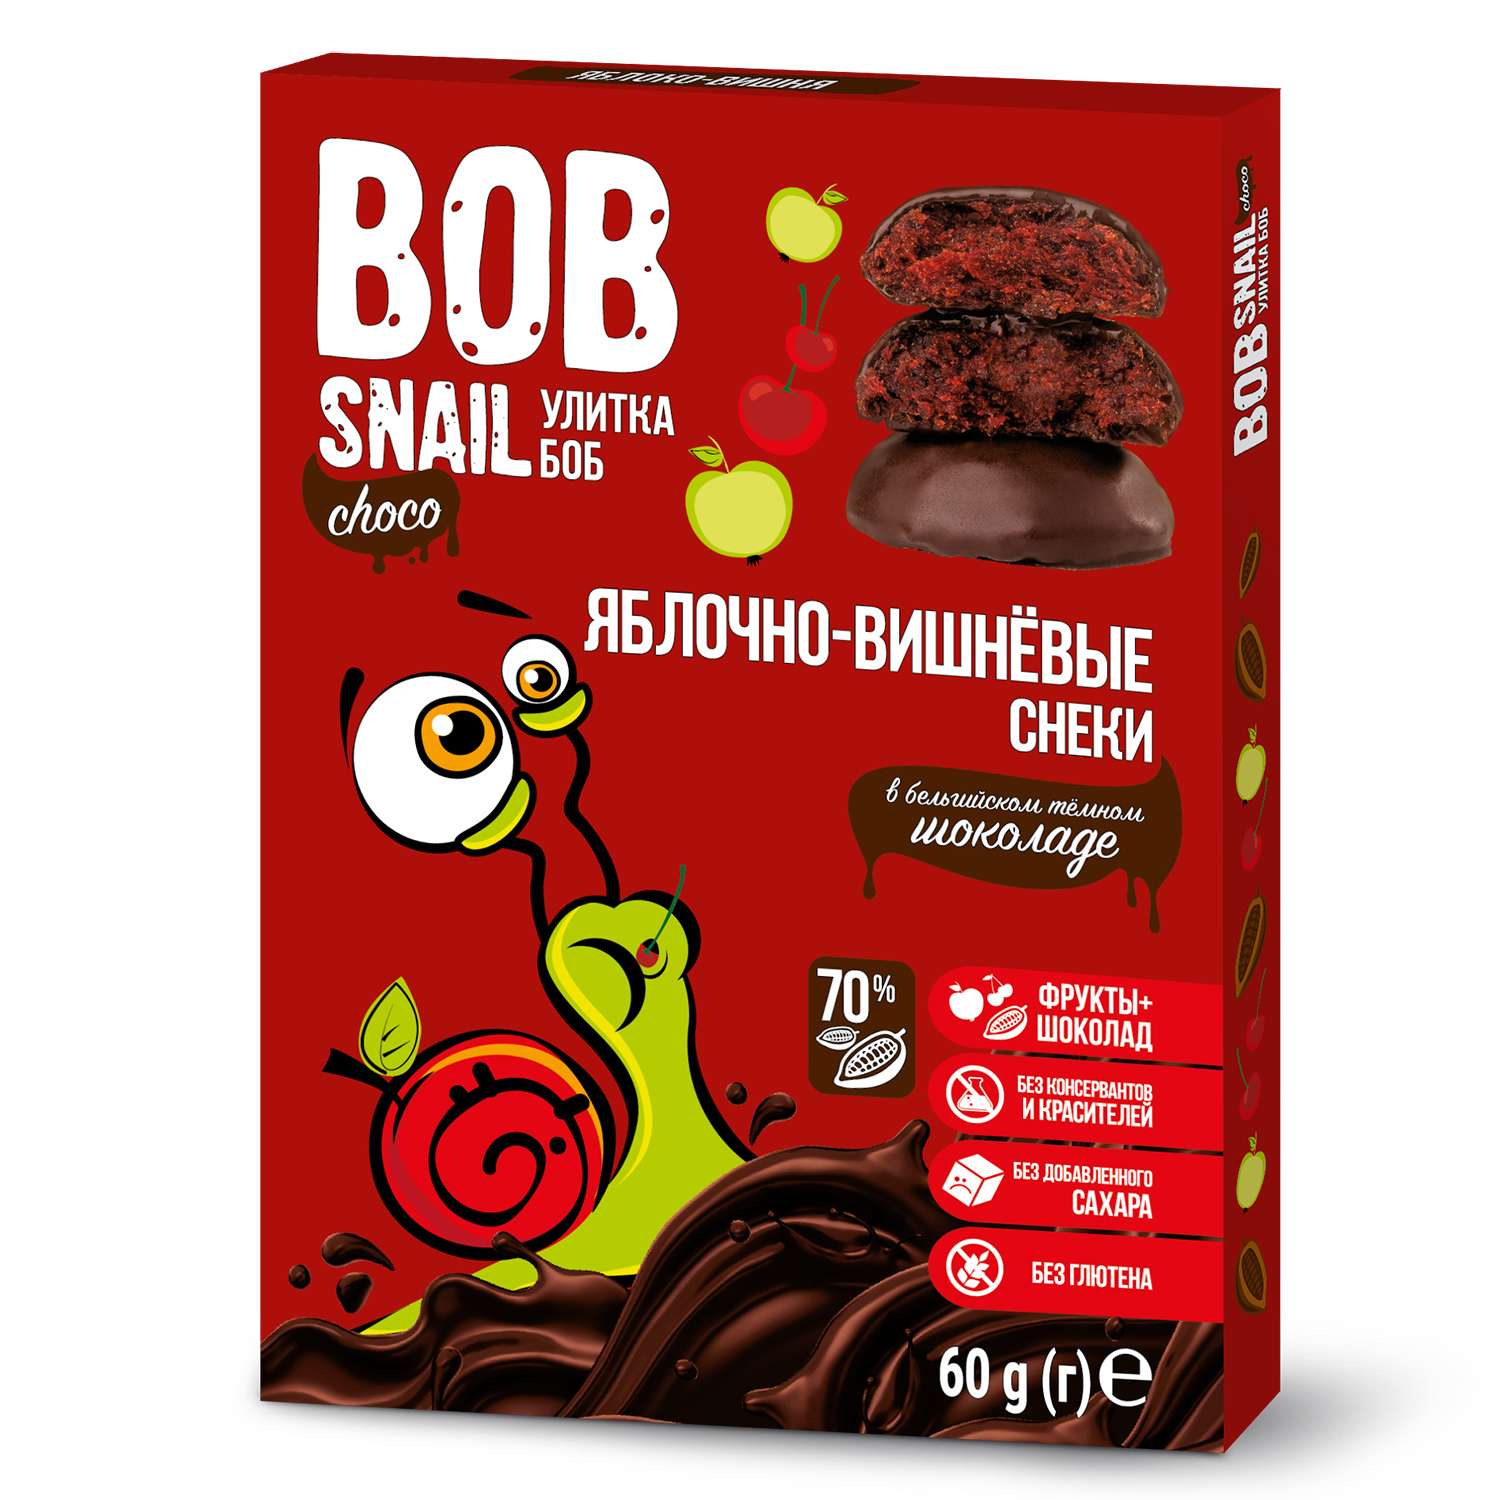 Снек Bob Snail Фруктово-ягодный яблочно-вишневый в темном бельгийском шоколаде без добавленного сахара 60г - фото 1